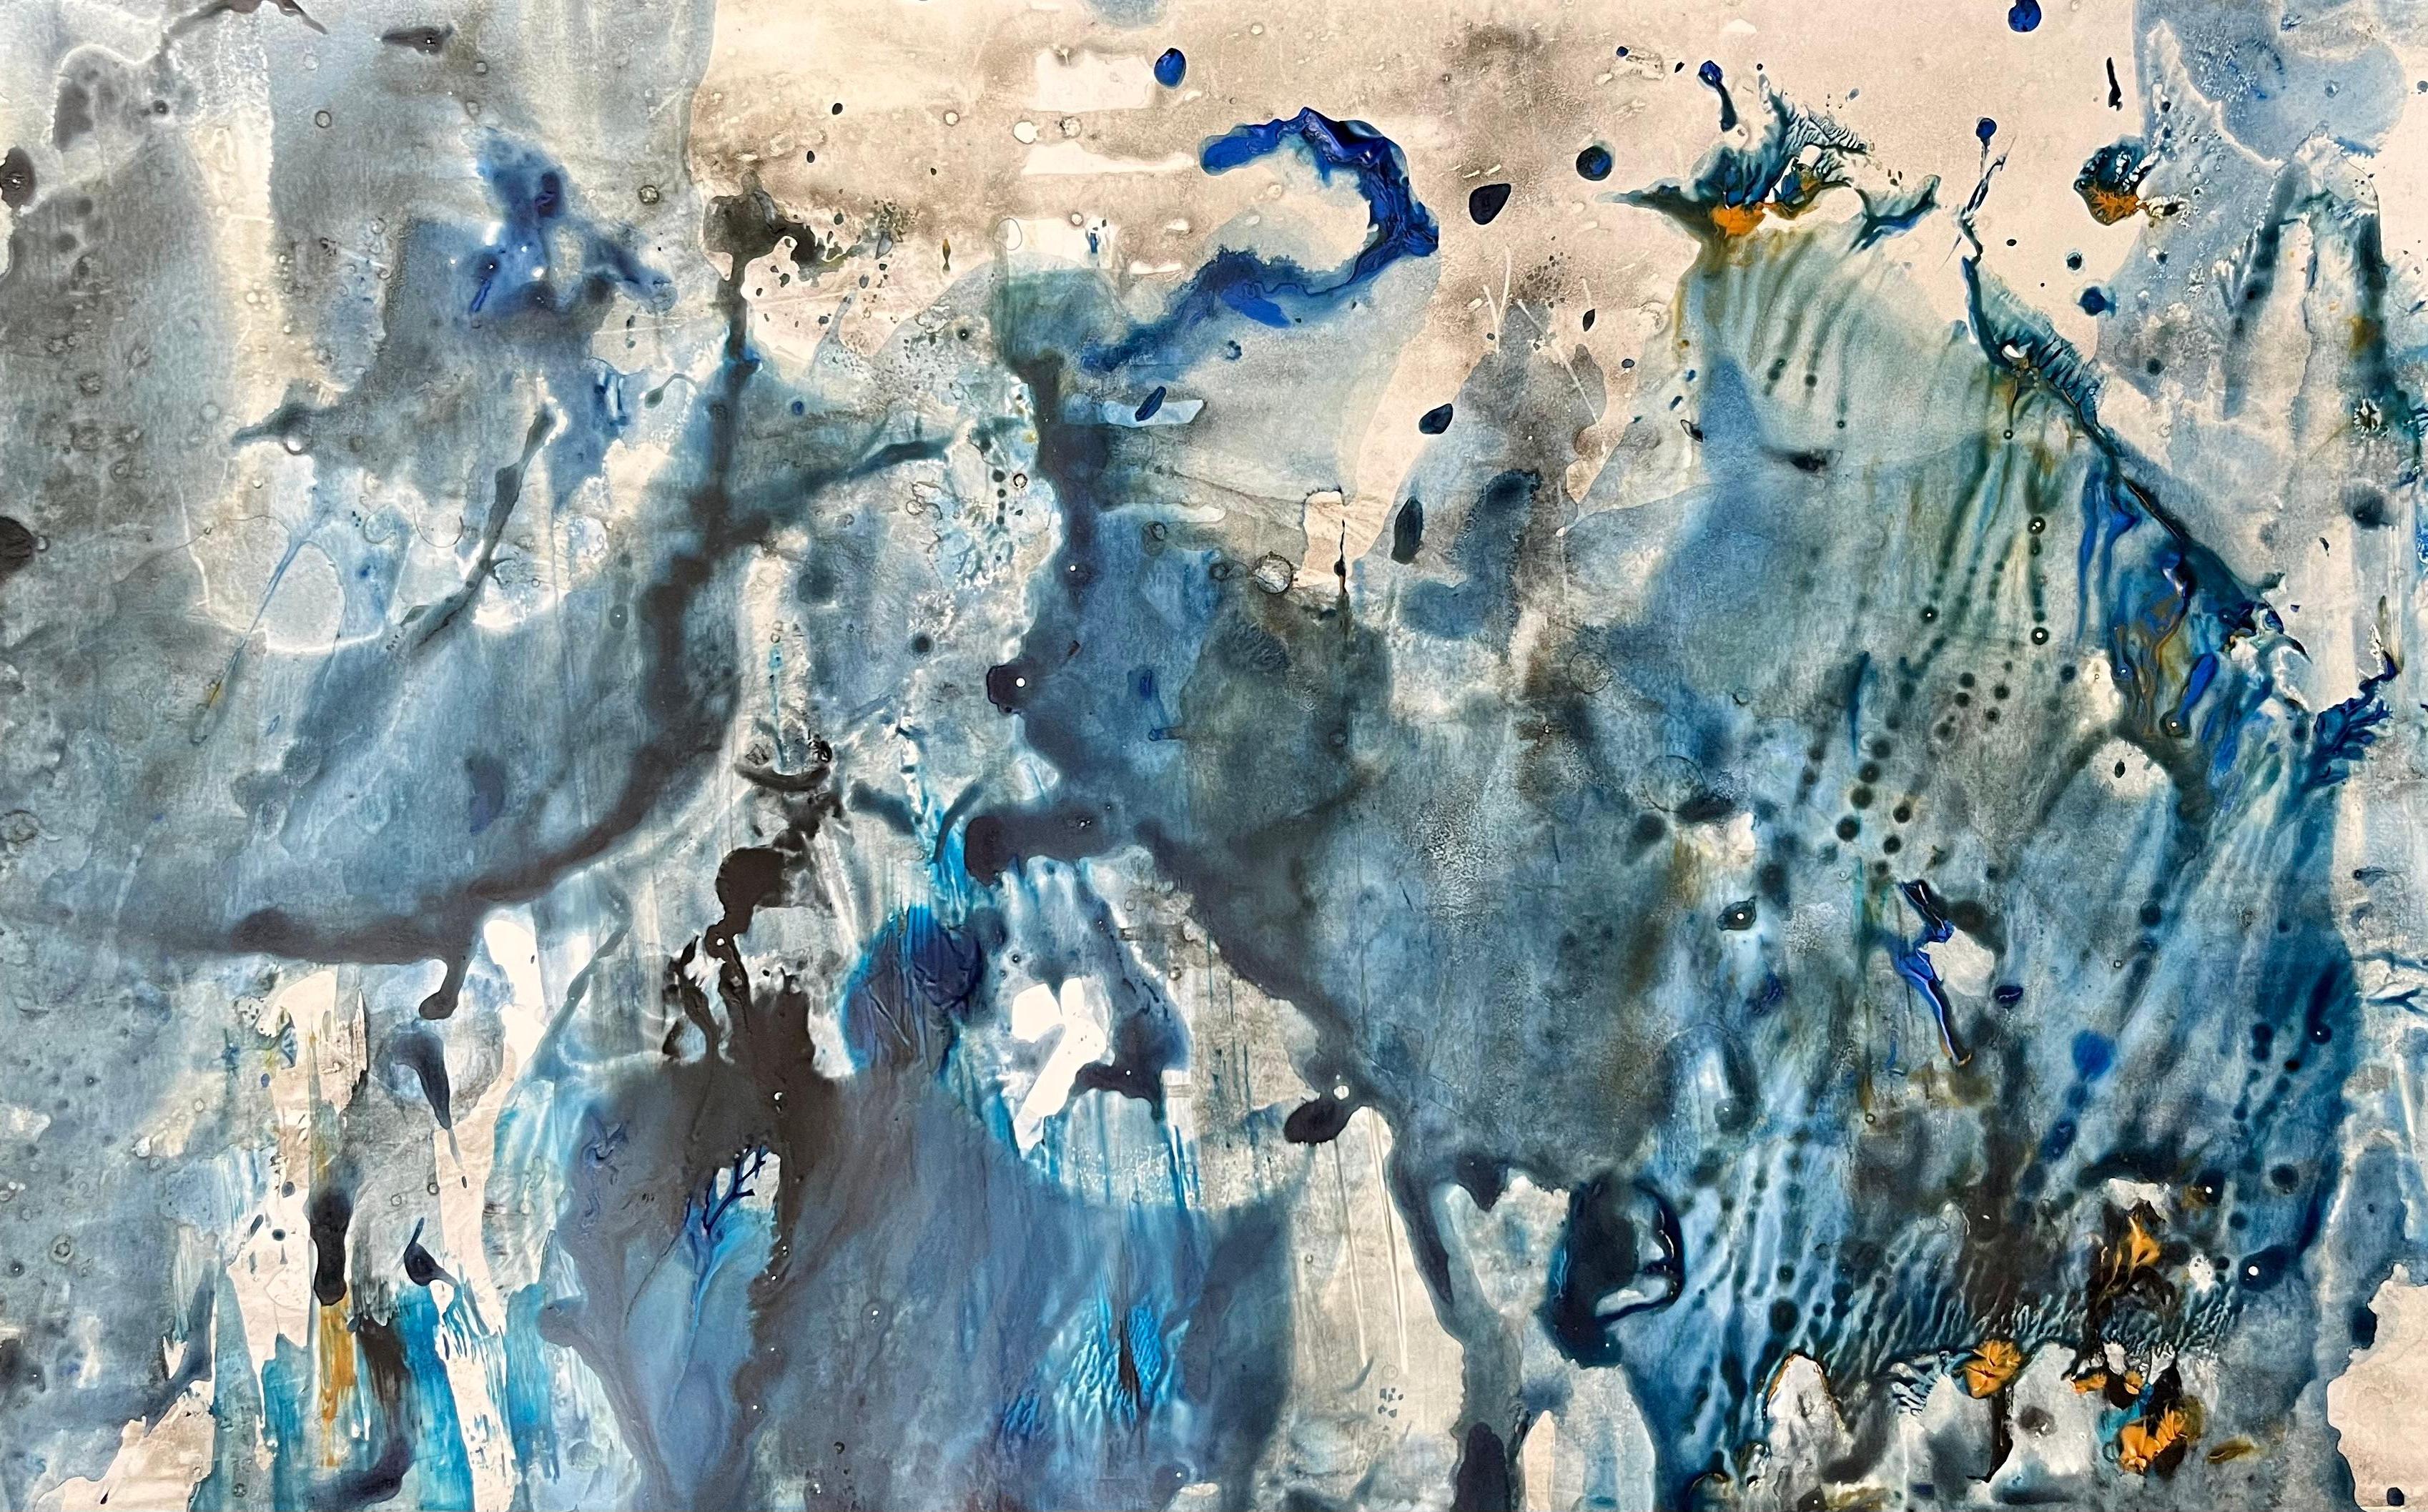 Abstract Painting Olga Volha Piashko  - dans le bleu profond